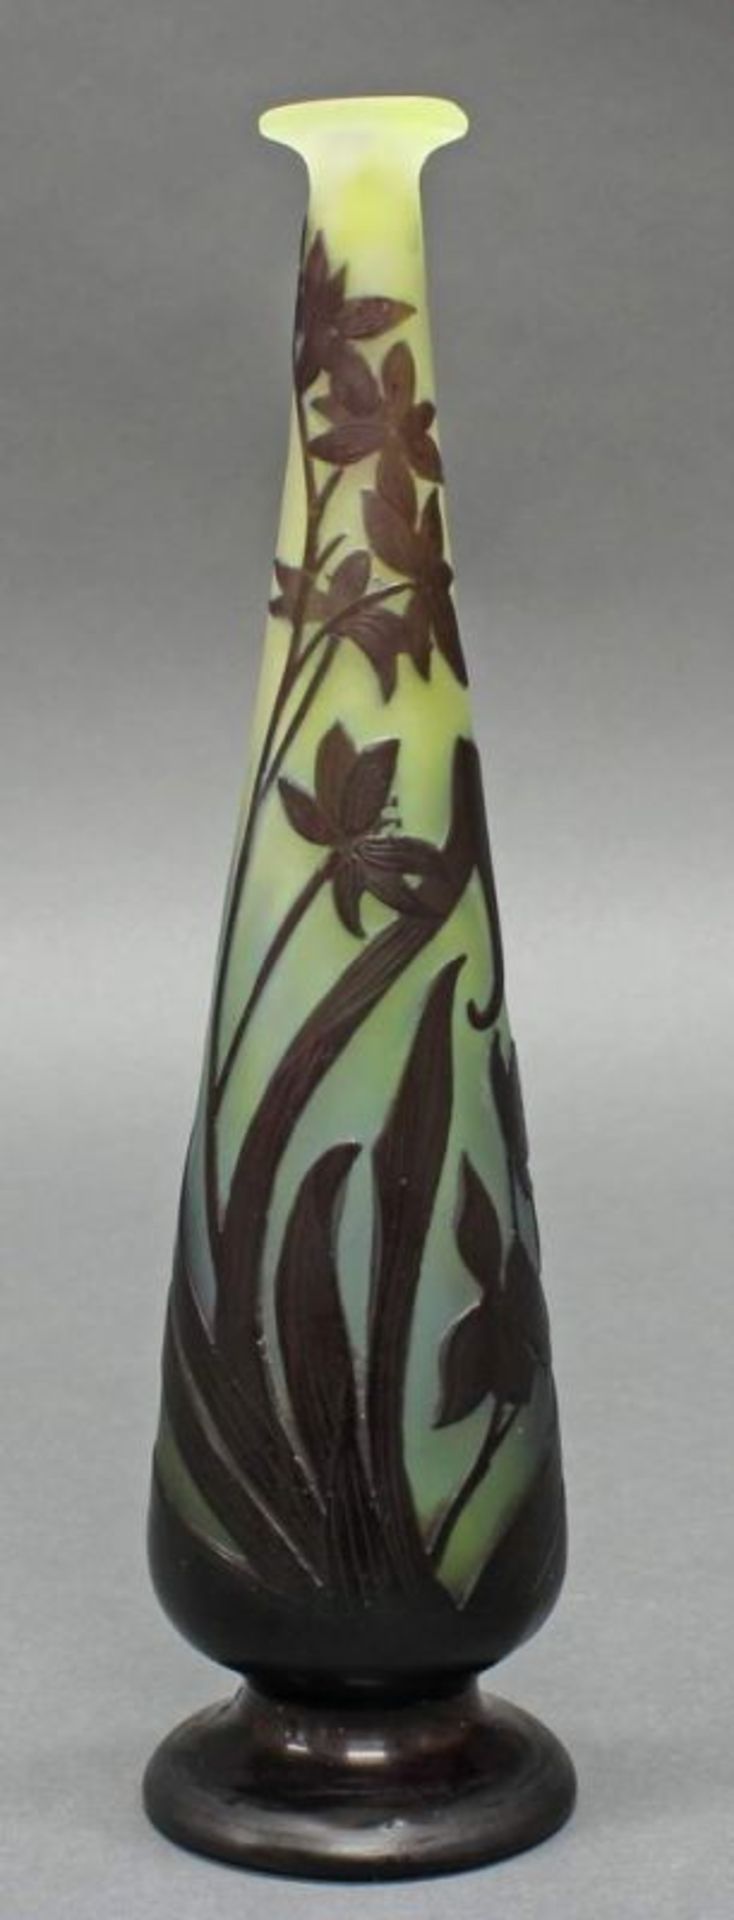 Vase, Emile Gallé, 1906-1914, Glas, Überfangdekor mit wilden Anemonen auf grünlichen Grund, schlanke